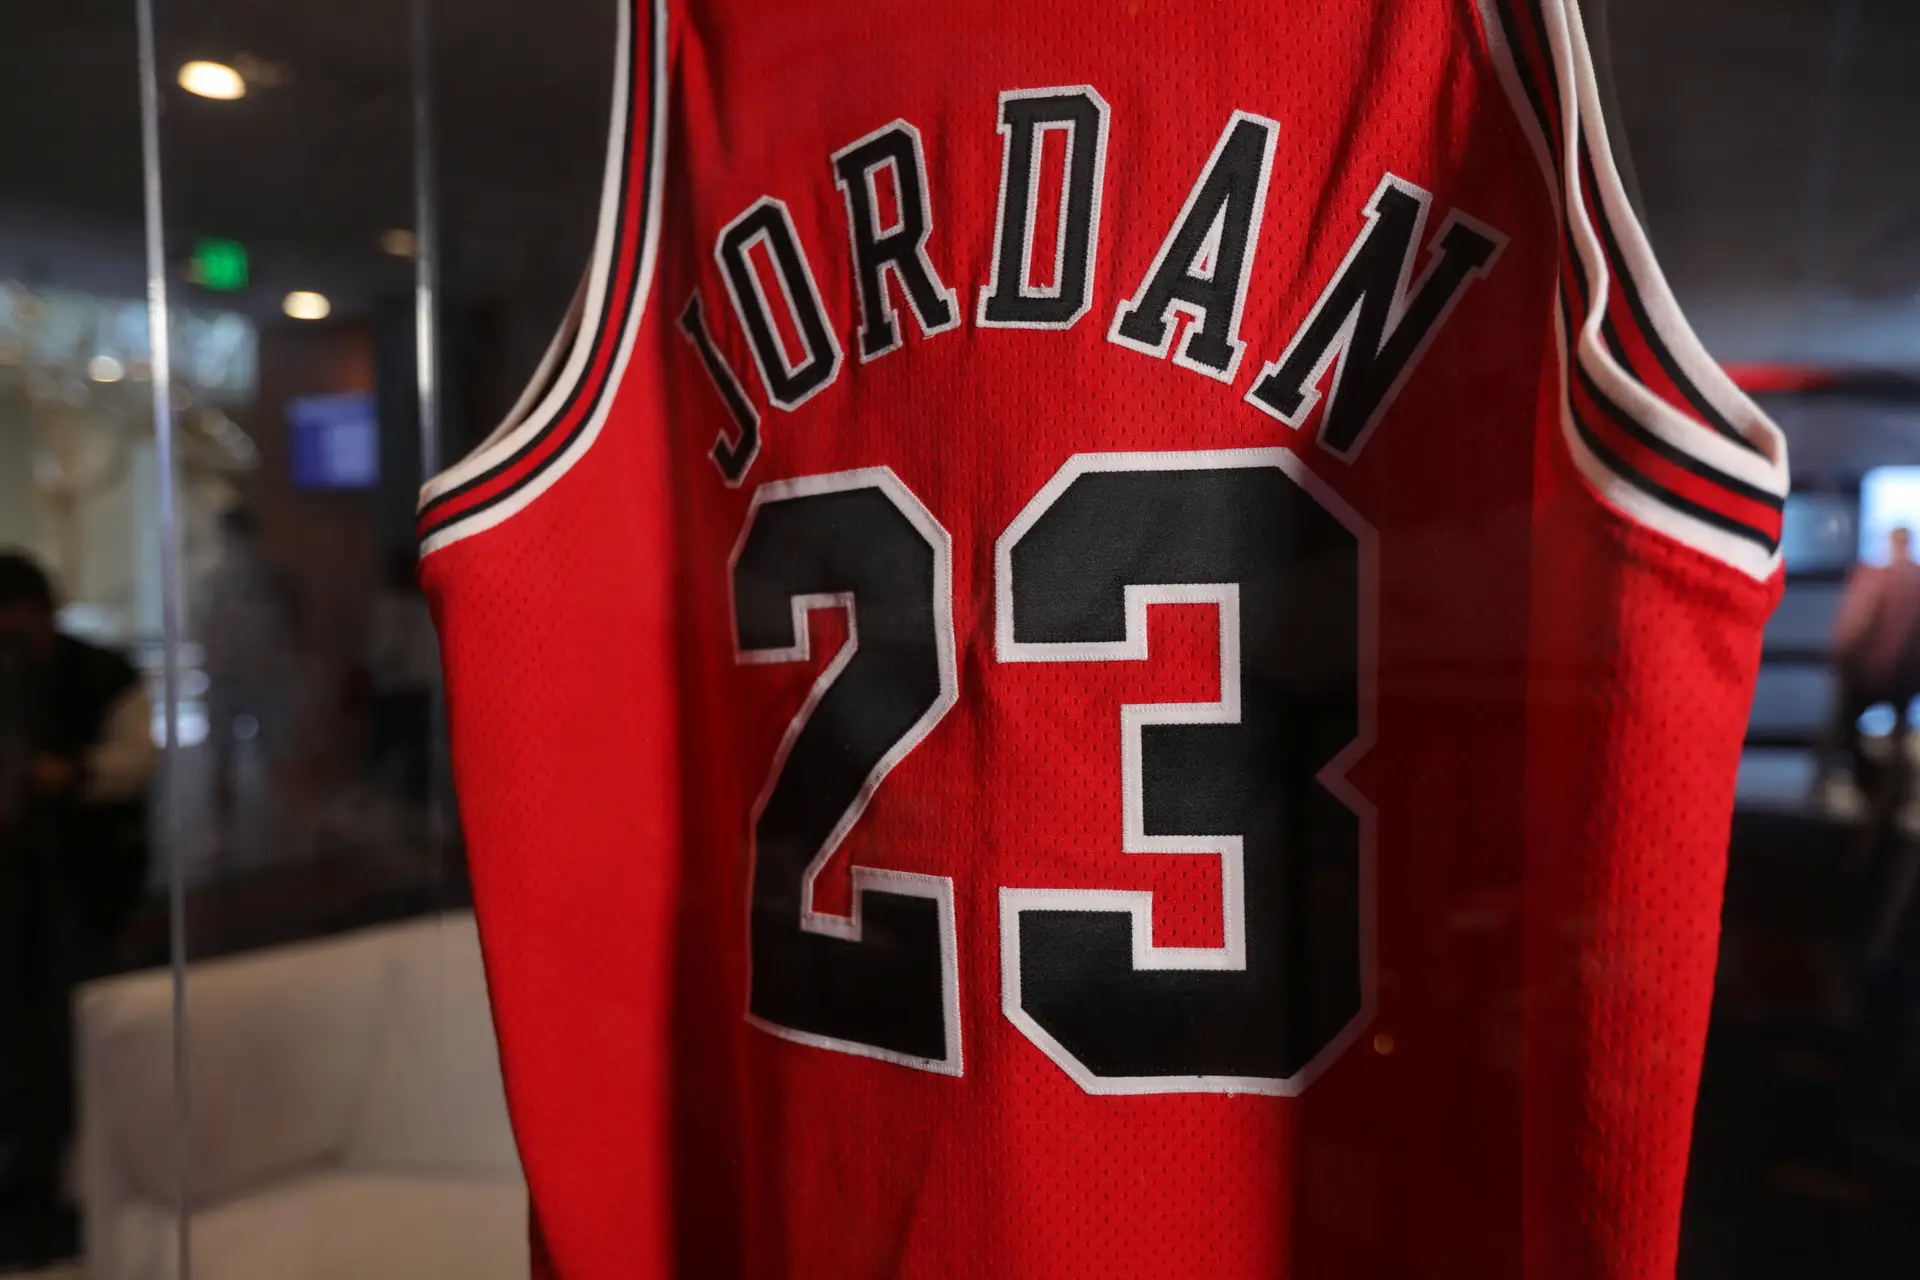 Camisola usada por Michael Jordan nas finais de 1998 leiloada por valor recorde